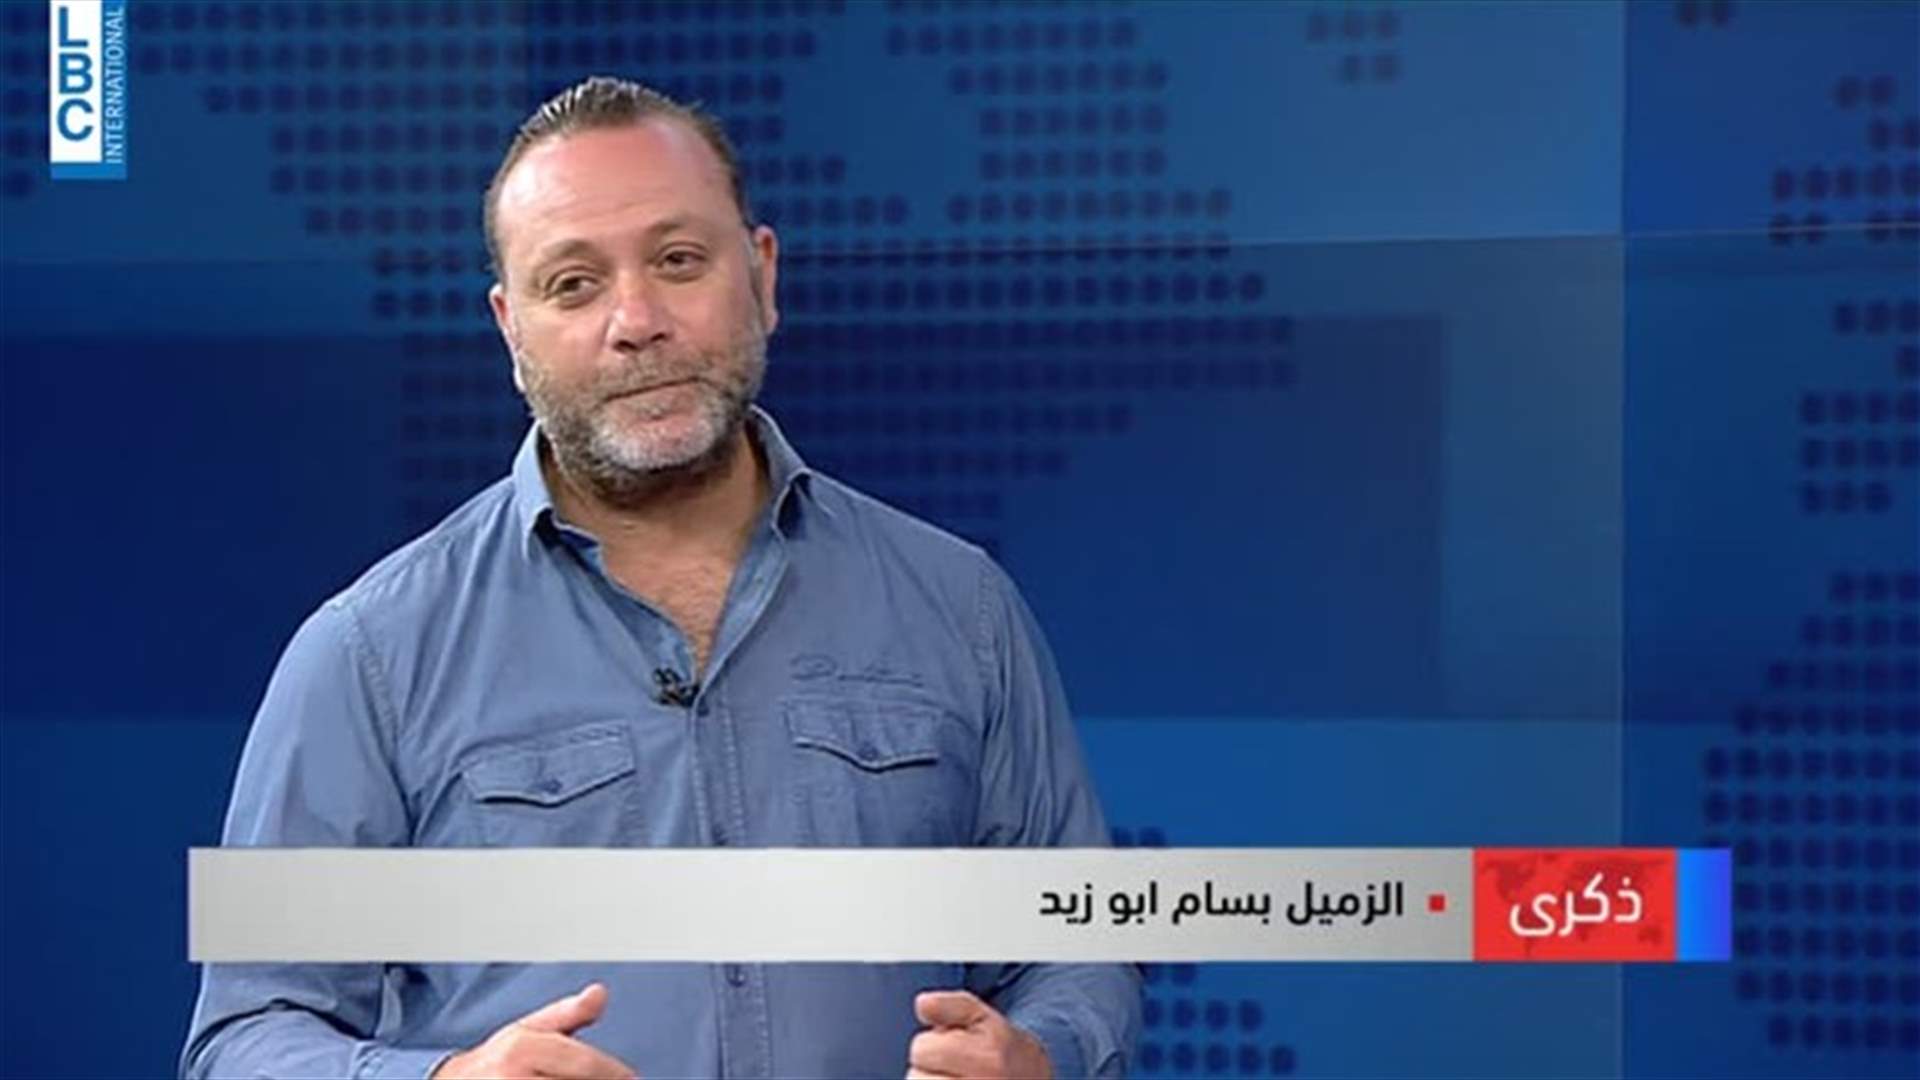 بسام ابو زيد يروي شهادته...اول صحافي اعلن نبأ استشهاد الحريري